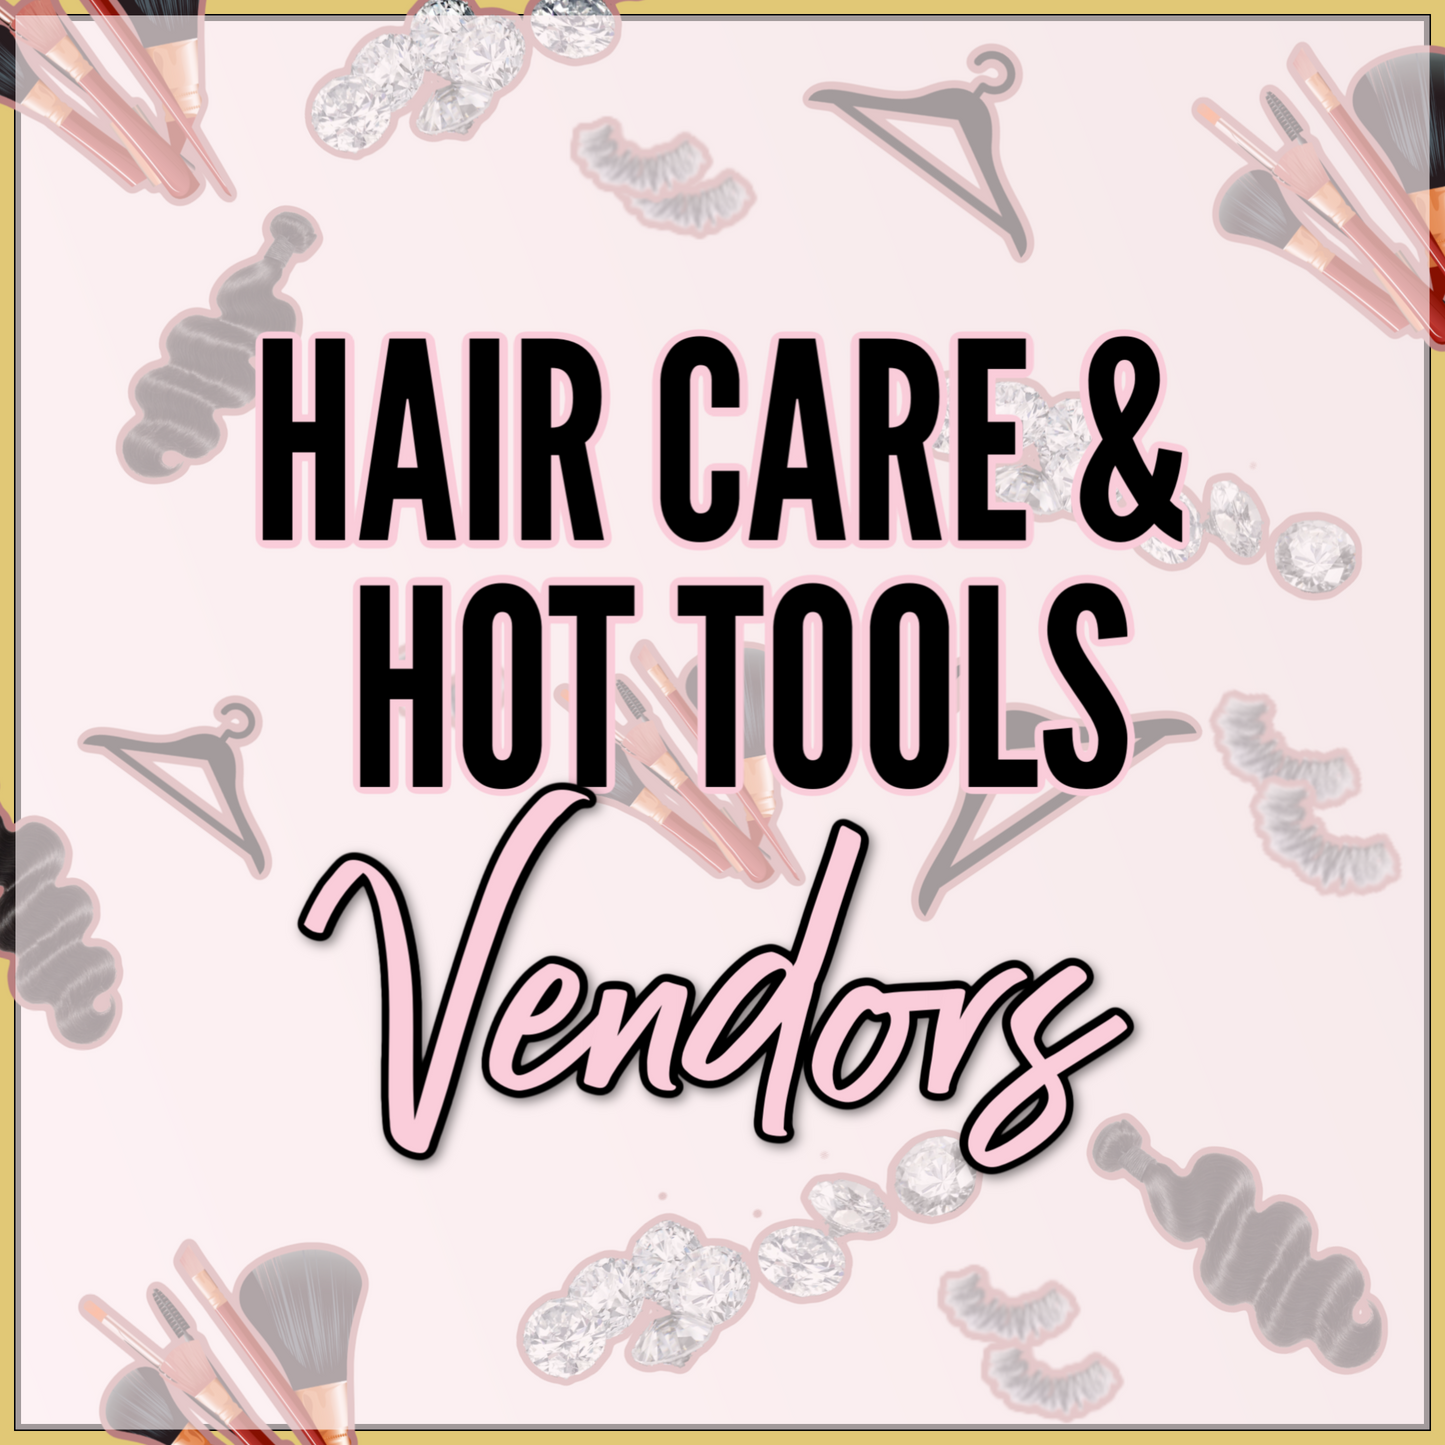 Hair Care & Hot Tools Vendors